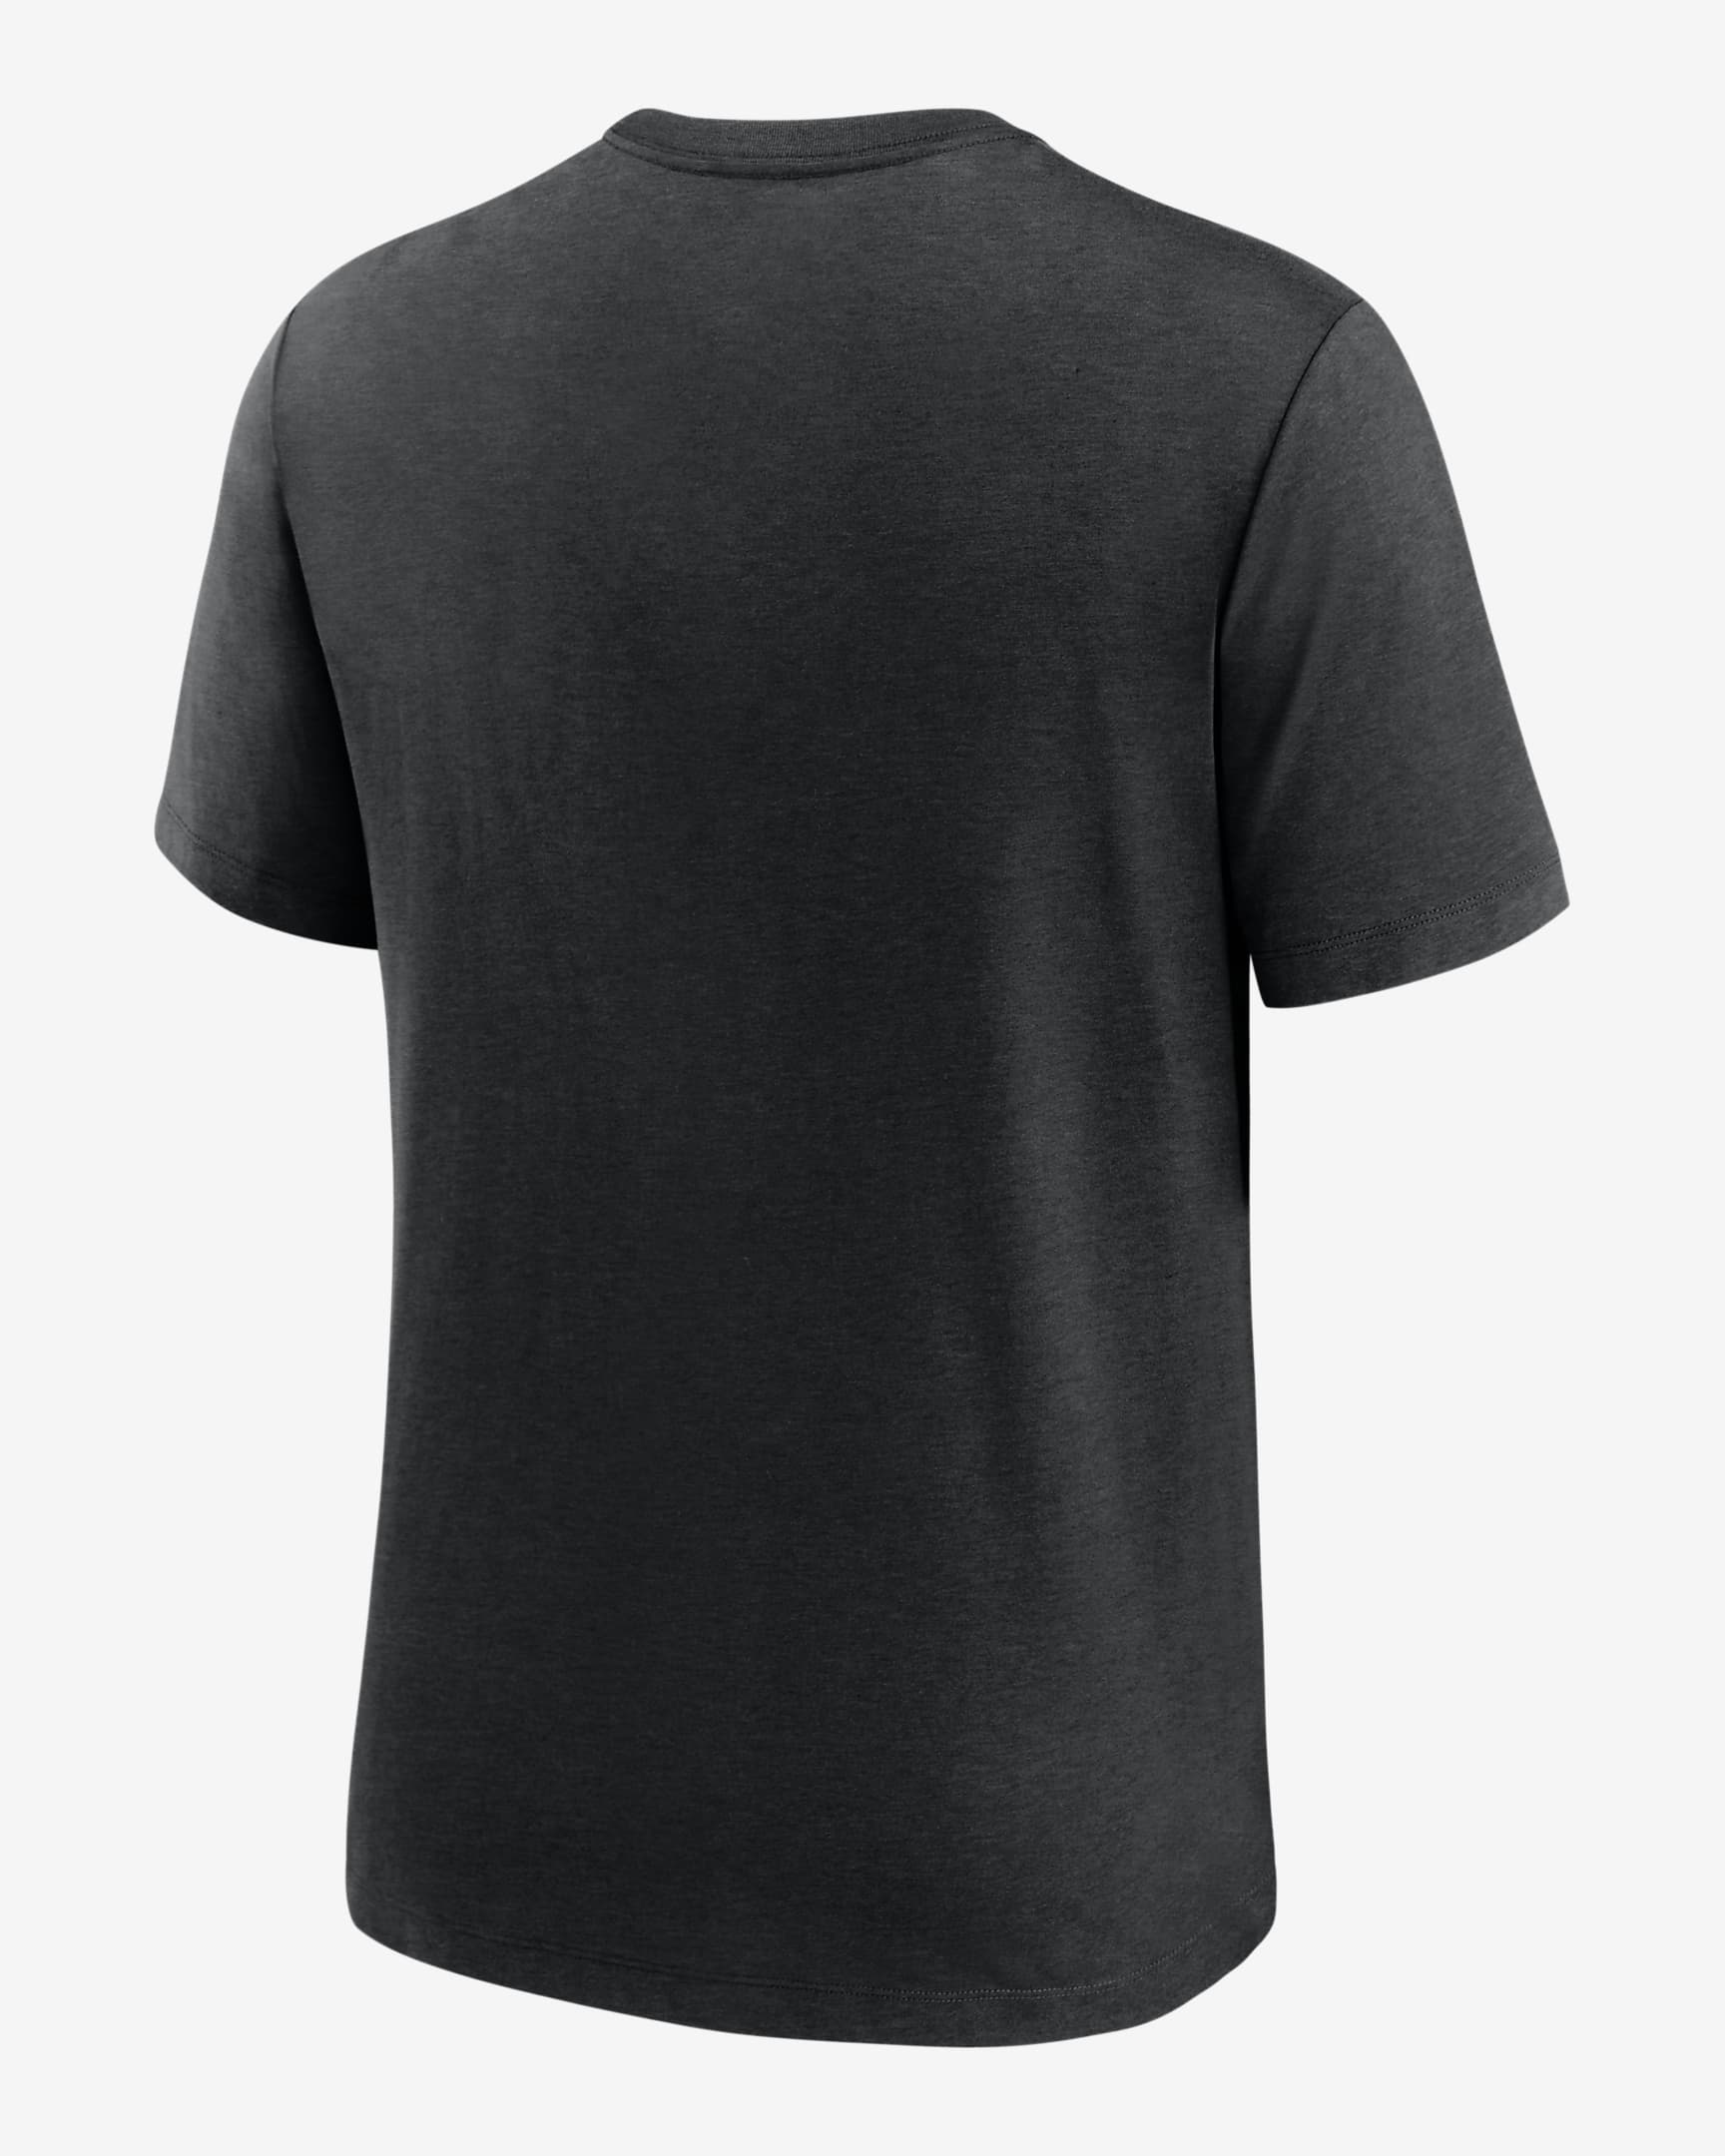 Nike Team (NFL Baltimore Ravens) Men's T-Shirt. Nike.com